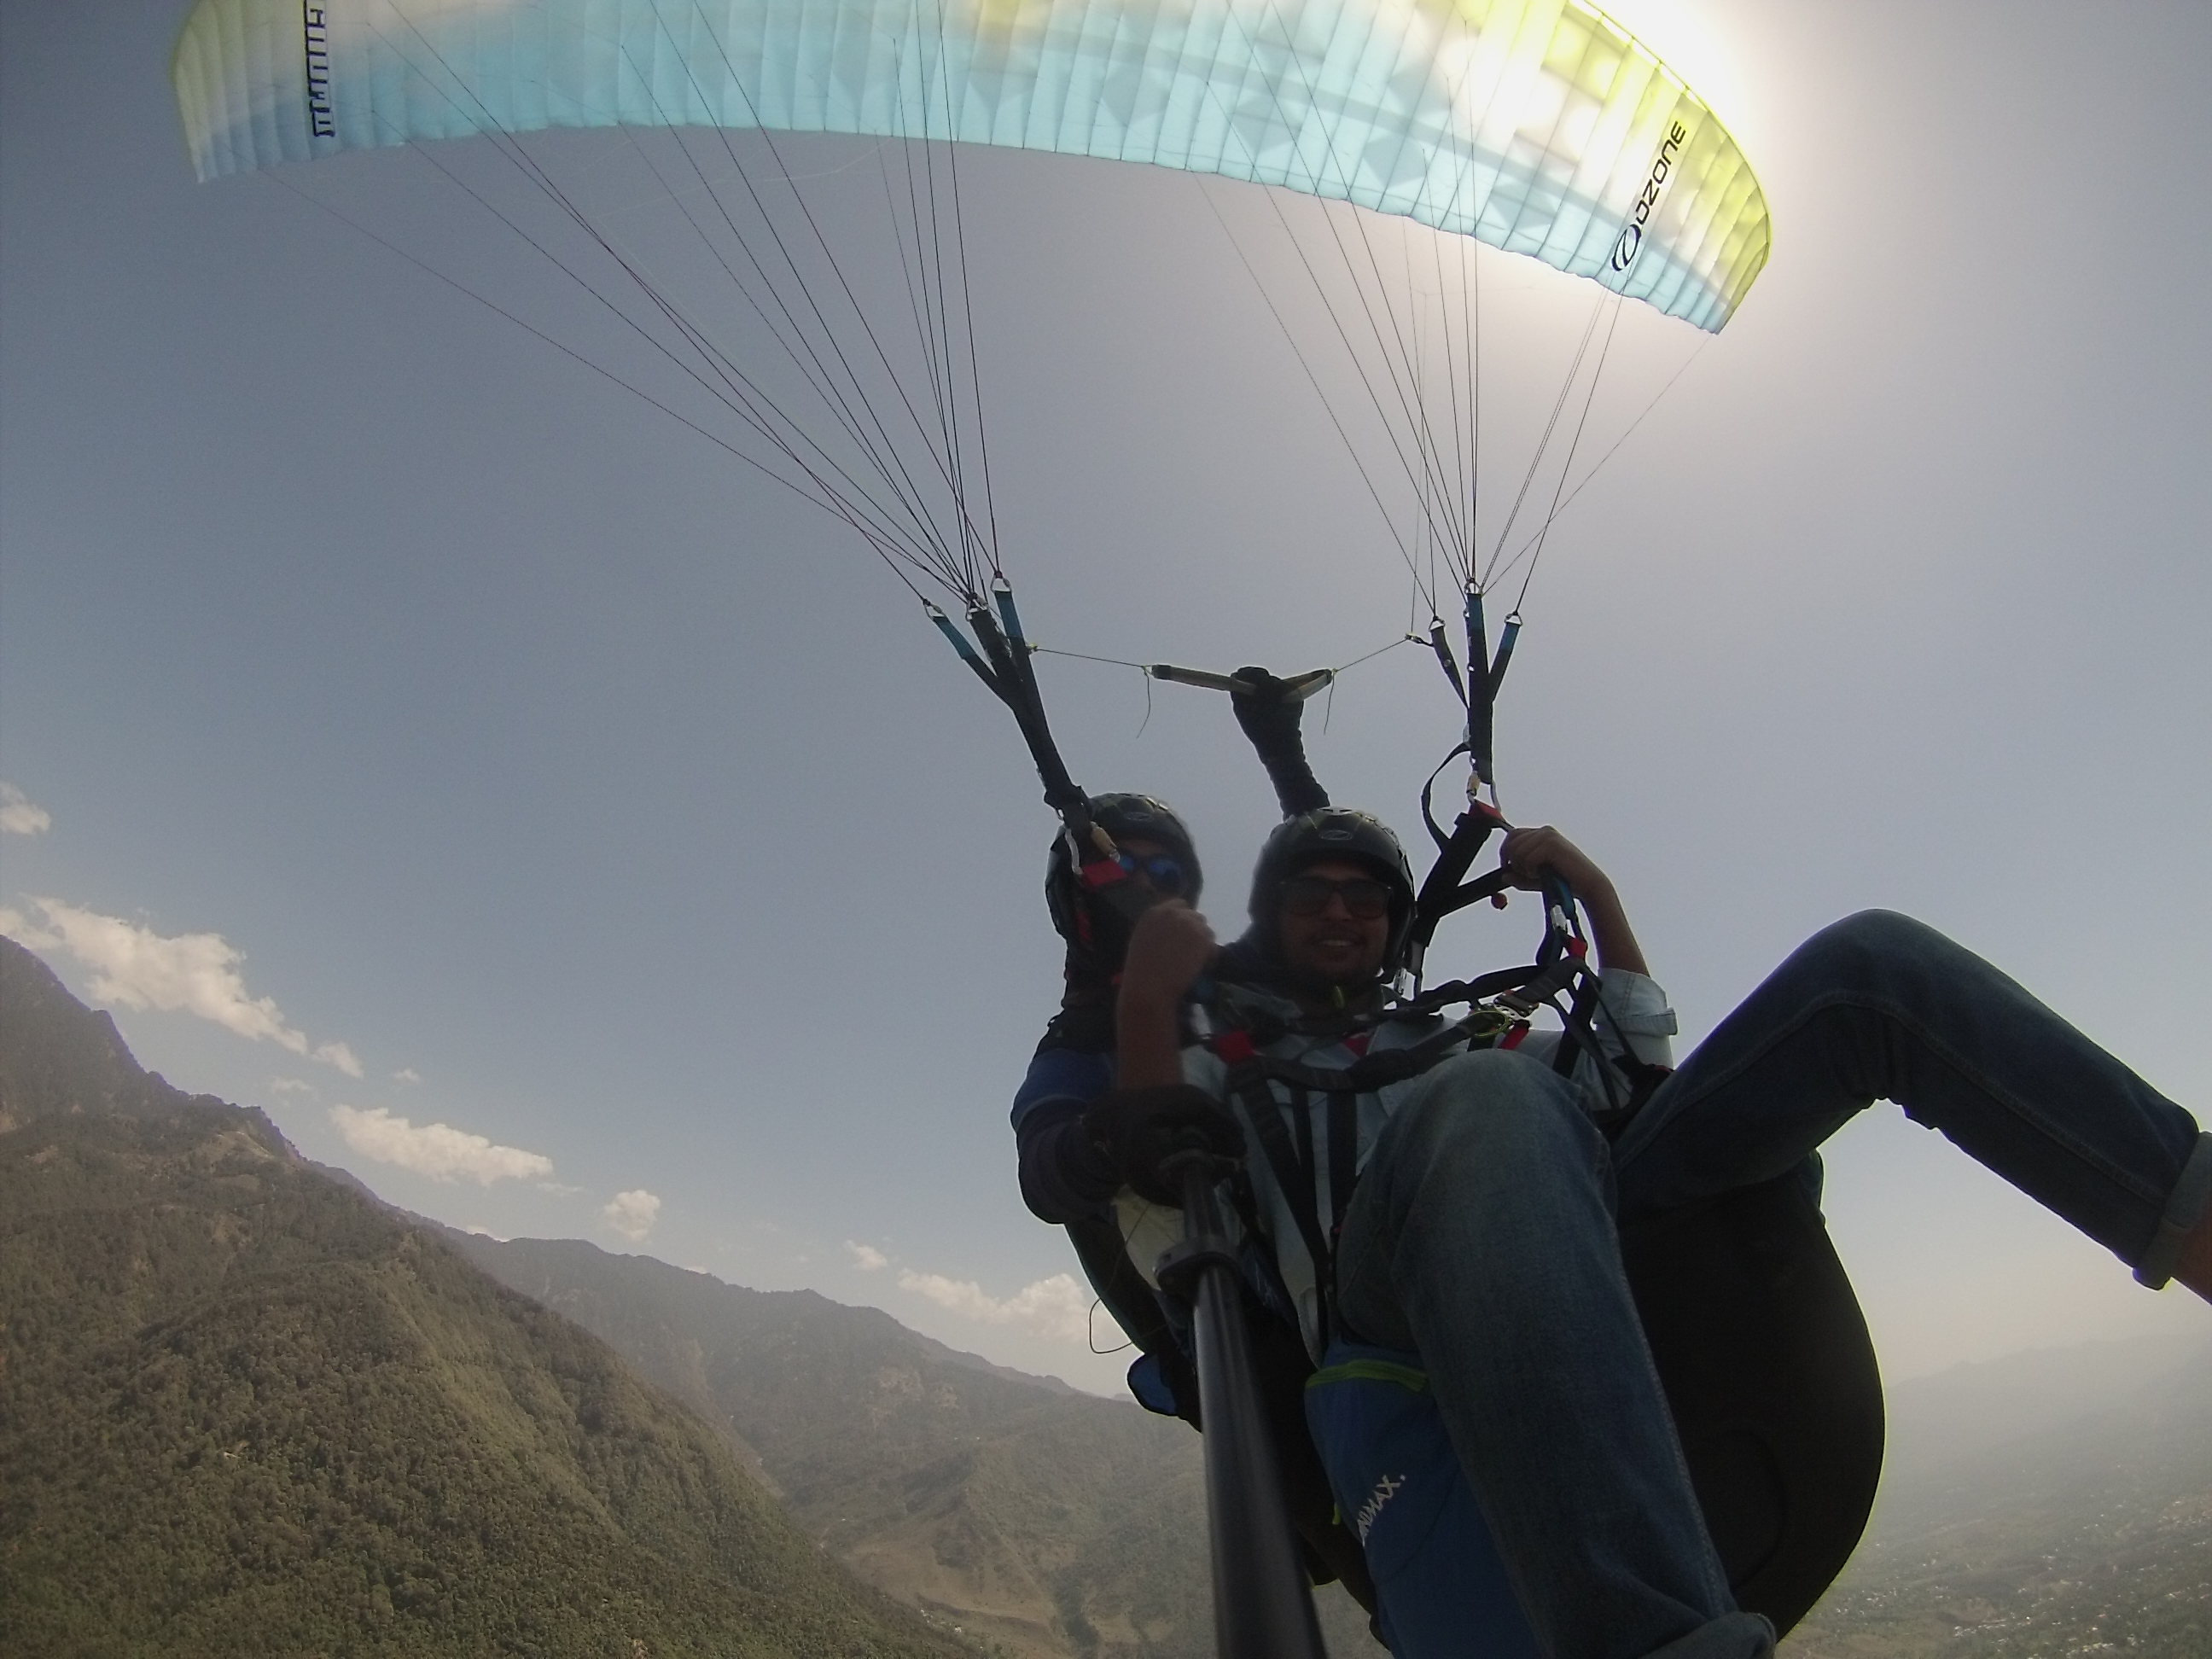 bir billing paragliding season